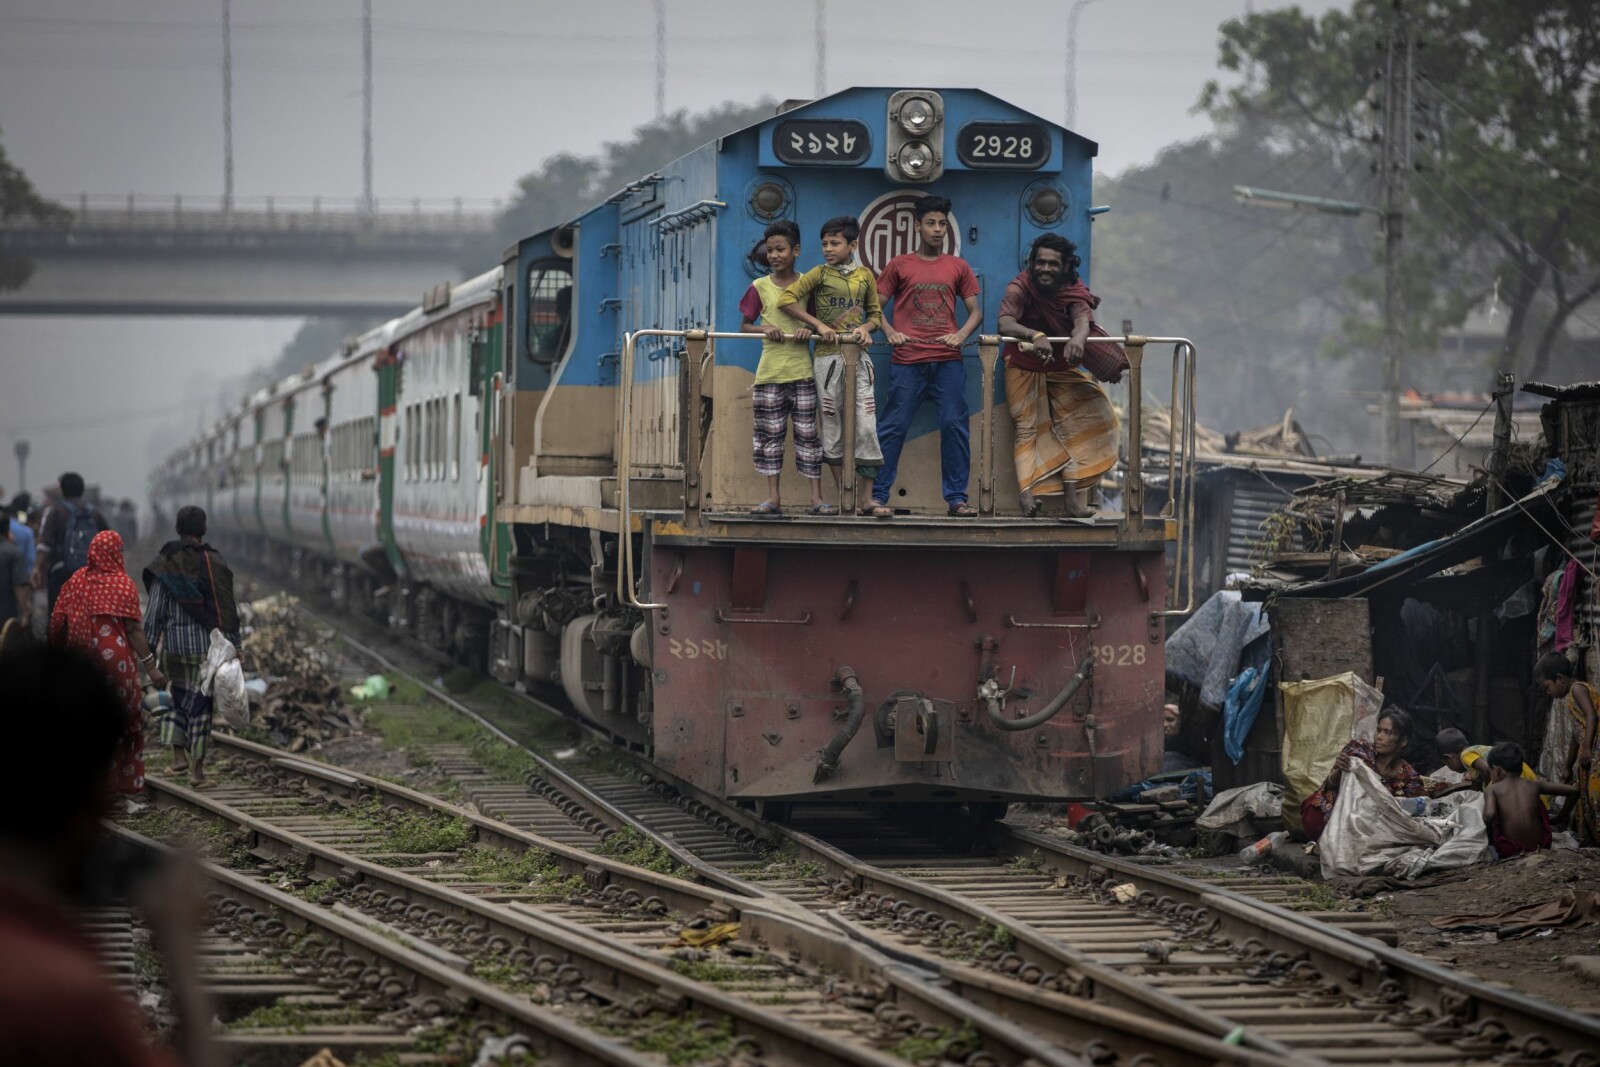 <b>UNNGÅR Å BETALE:</b> Tog er for mange det eneste transportalternativet når de skal til og fra jobb. Men noen ganger er det fullt og da benytter mange taket og andre plasser på toget. Men jeg ble fortalt at også mange fattige, som ikke har råd til billett, sniker ved å stå på taket eller som her; stå helt foran på loket. Noe de for øvrig så ut til å nyte, der toger farer gjennom slummen i Dhaka.